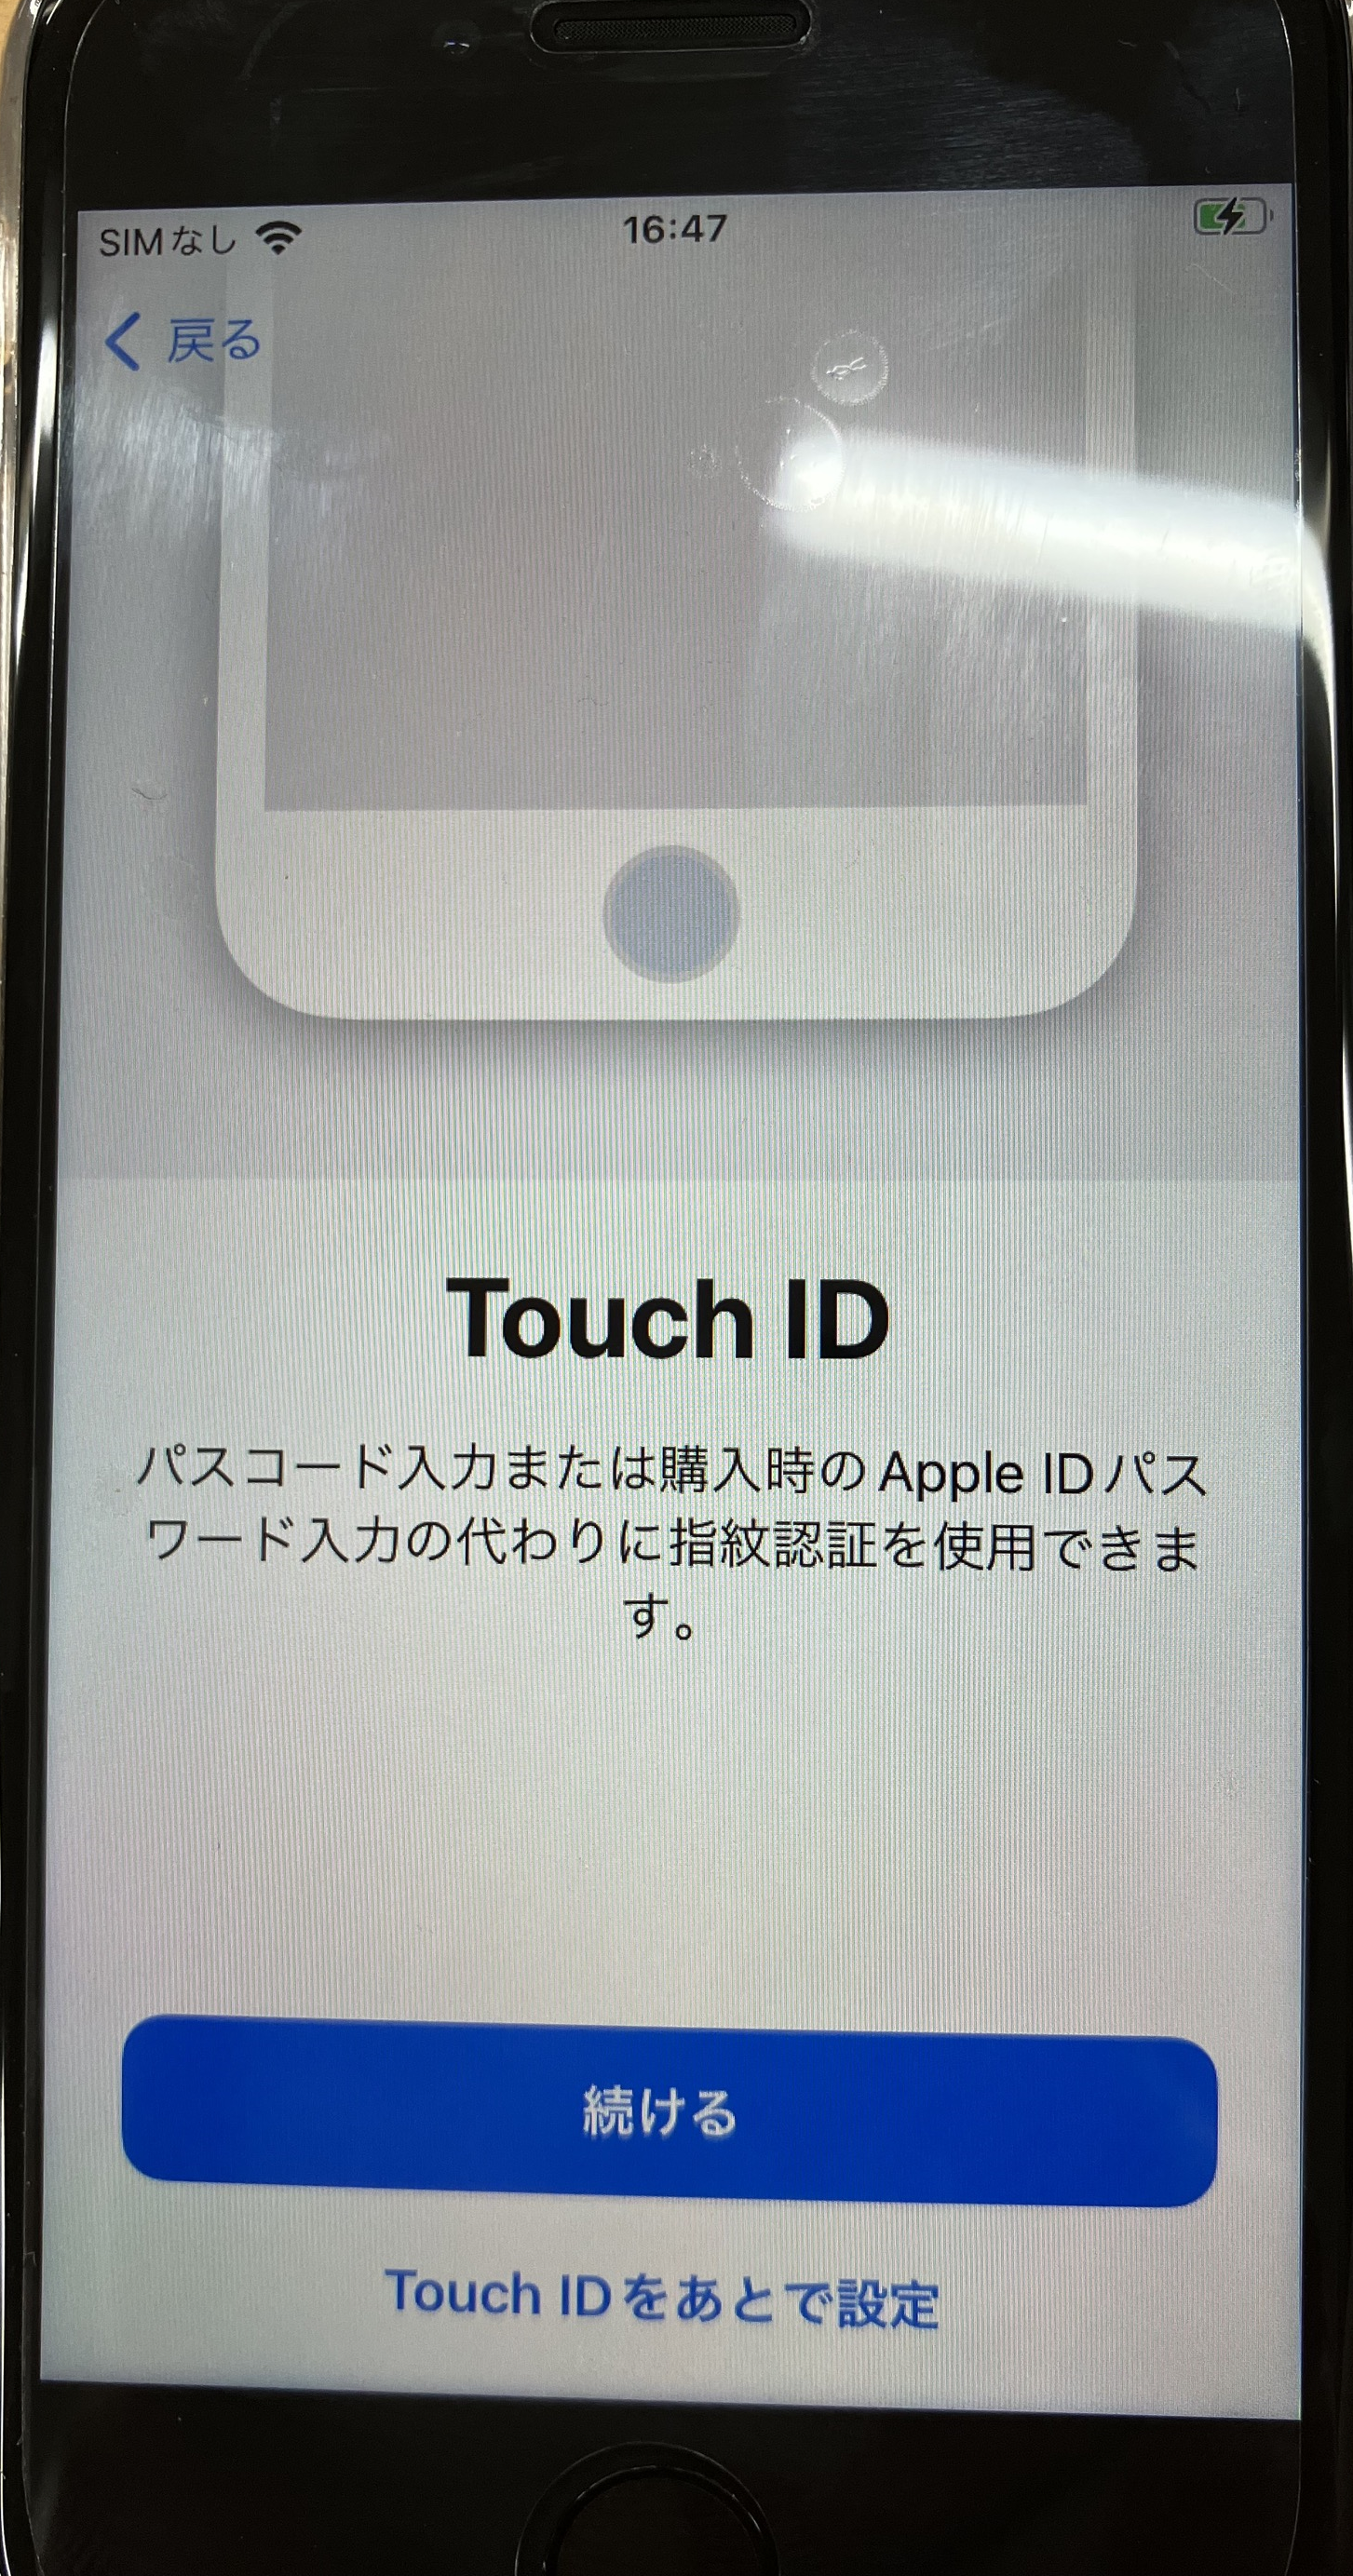 iPhone:Touch IDなどの設定は「続ける」または「あとで設定」のどちらかを選択して進める